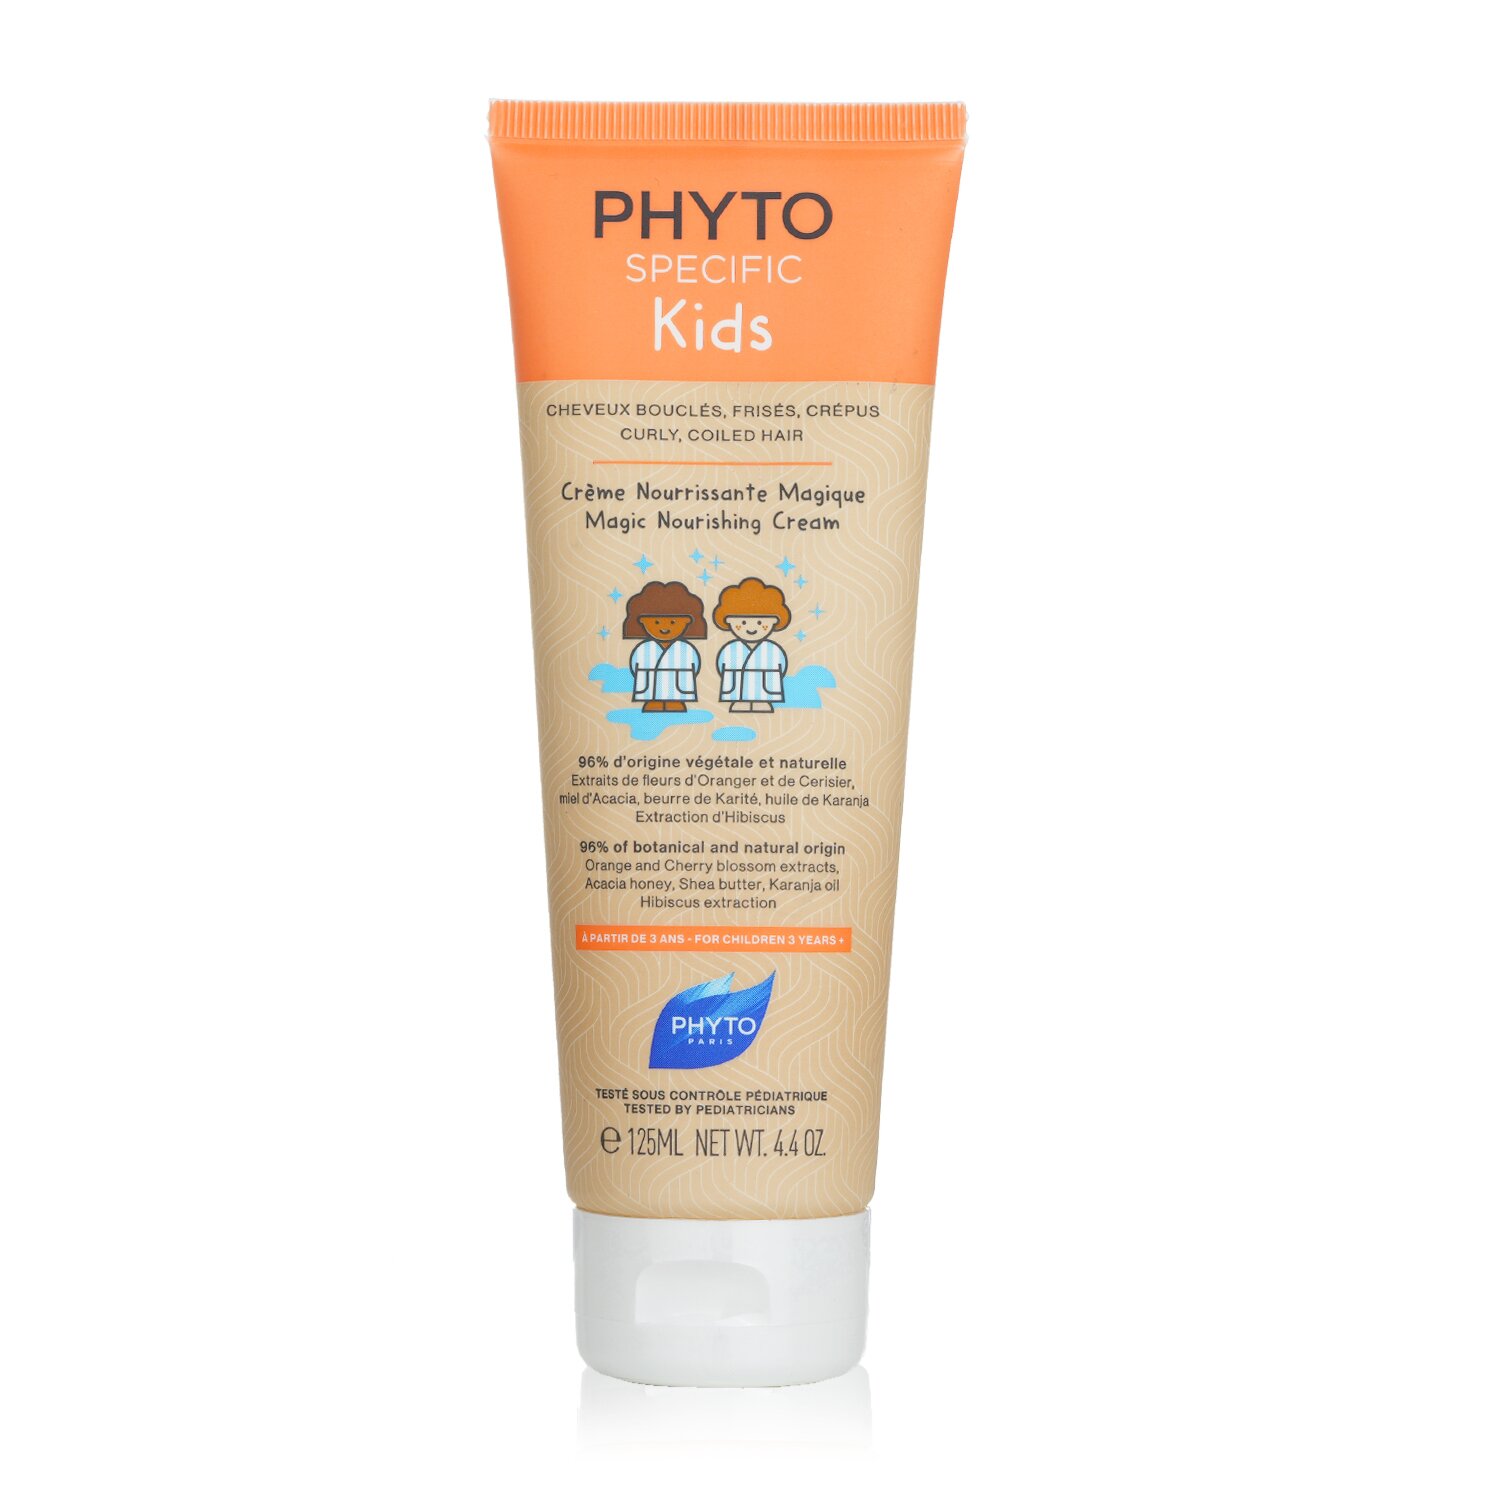 髮朵 Phyto - Phyto Specific 兒童魔法滋養乳霜 - 曲髮,捲髮（適合 3 歲以上兒童）